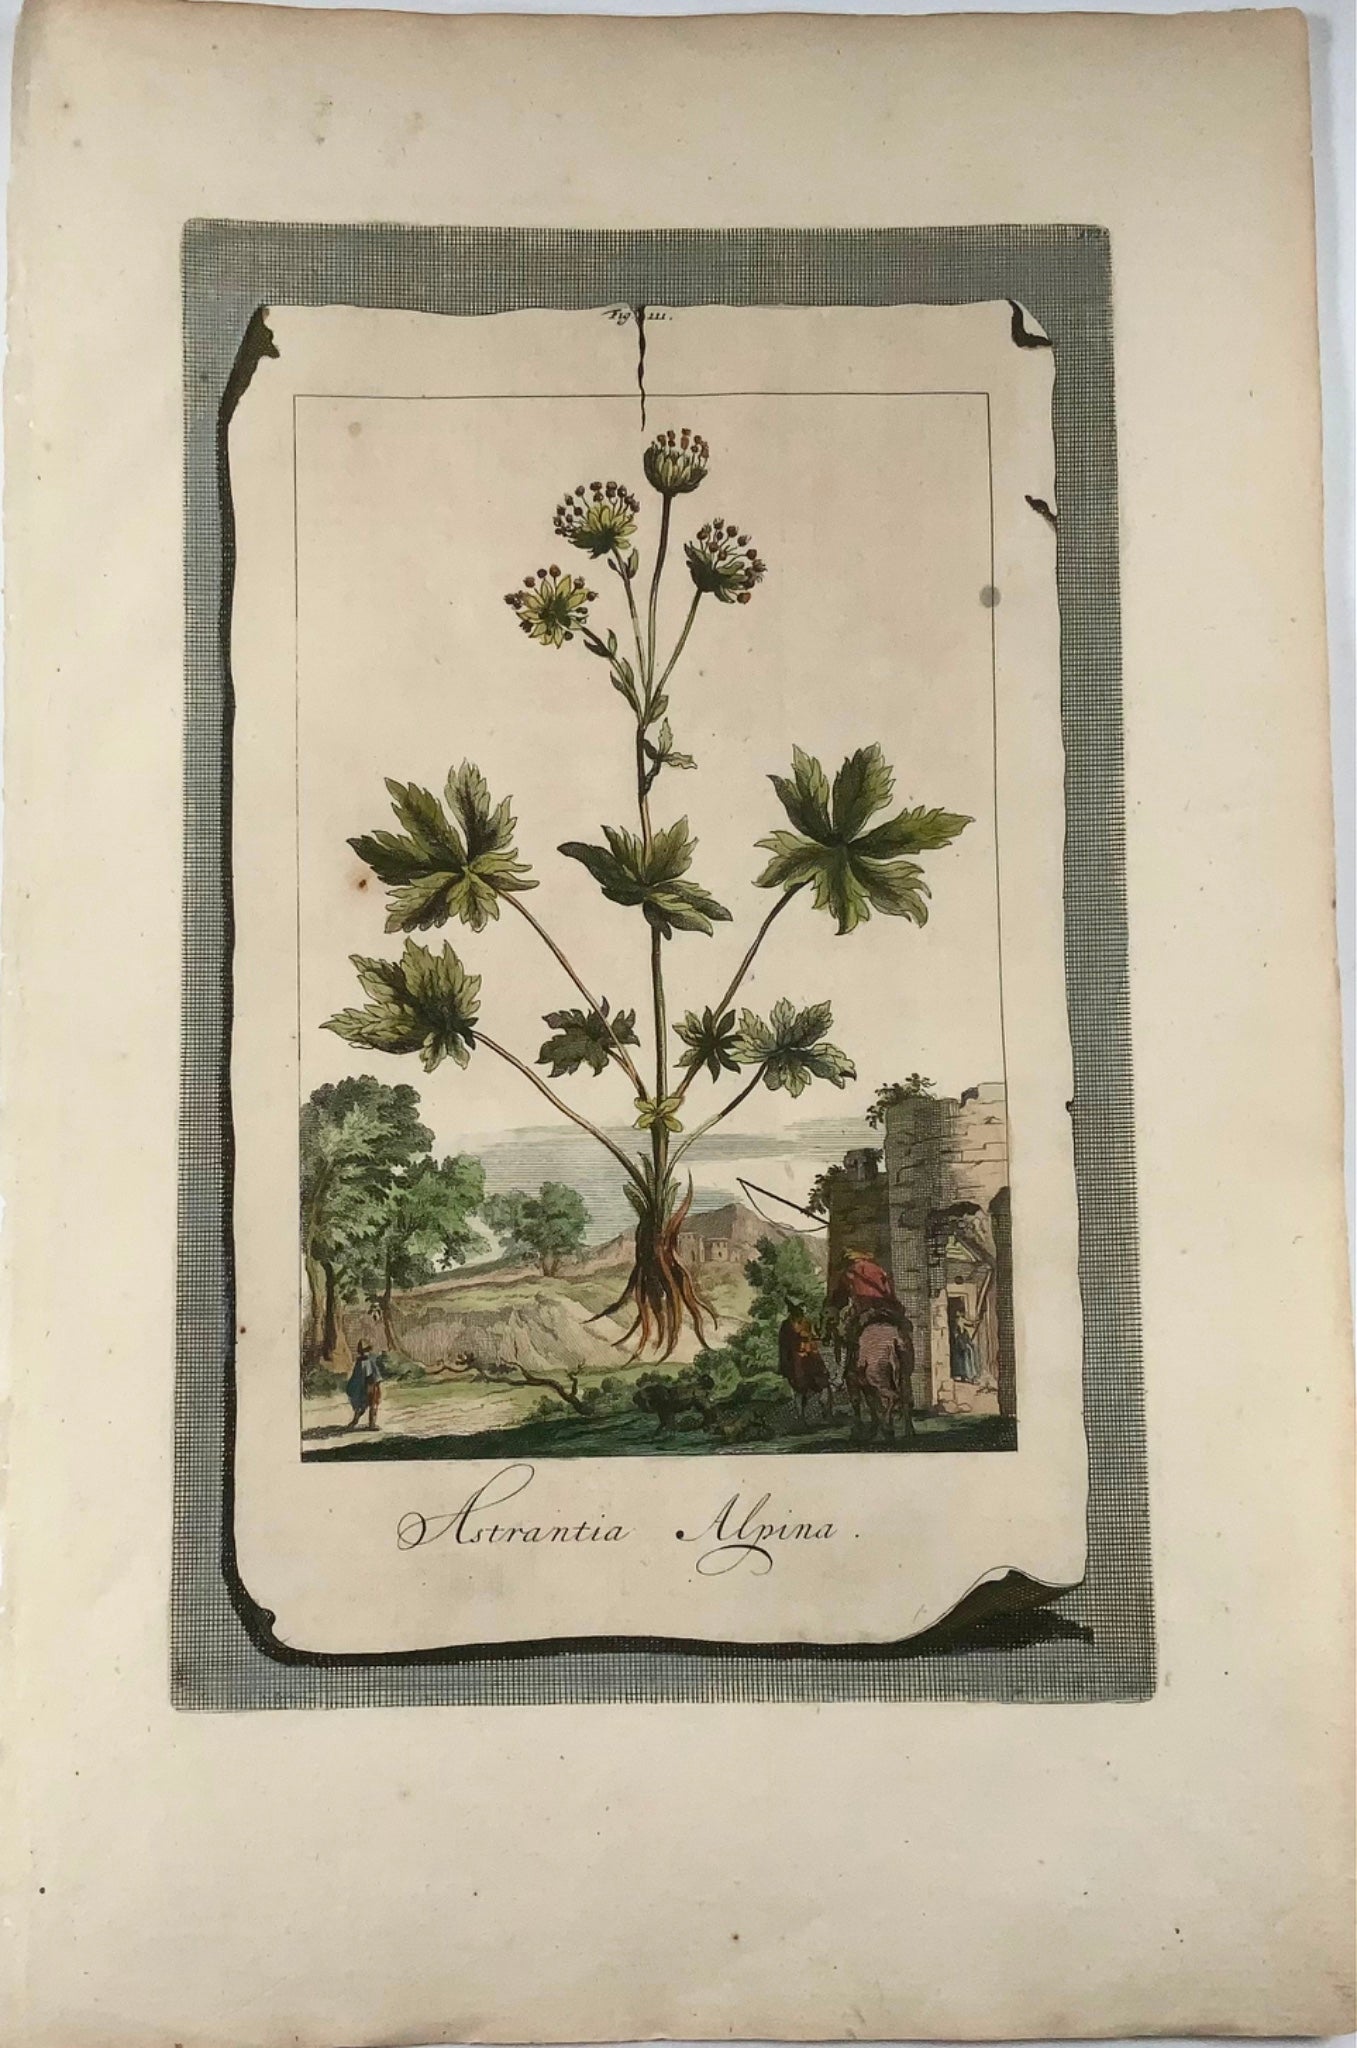 1696 Astrantia Alpina, large folio, botany, Abraham Munting, large folio